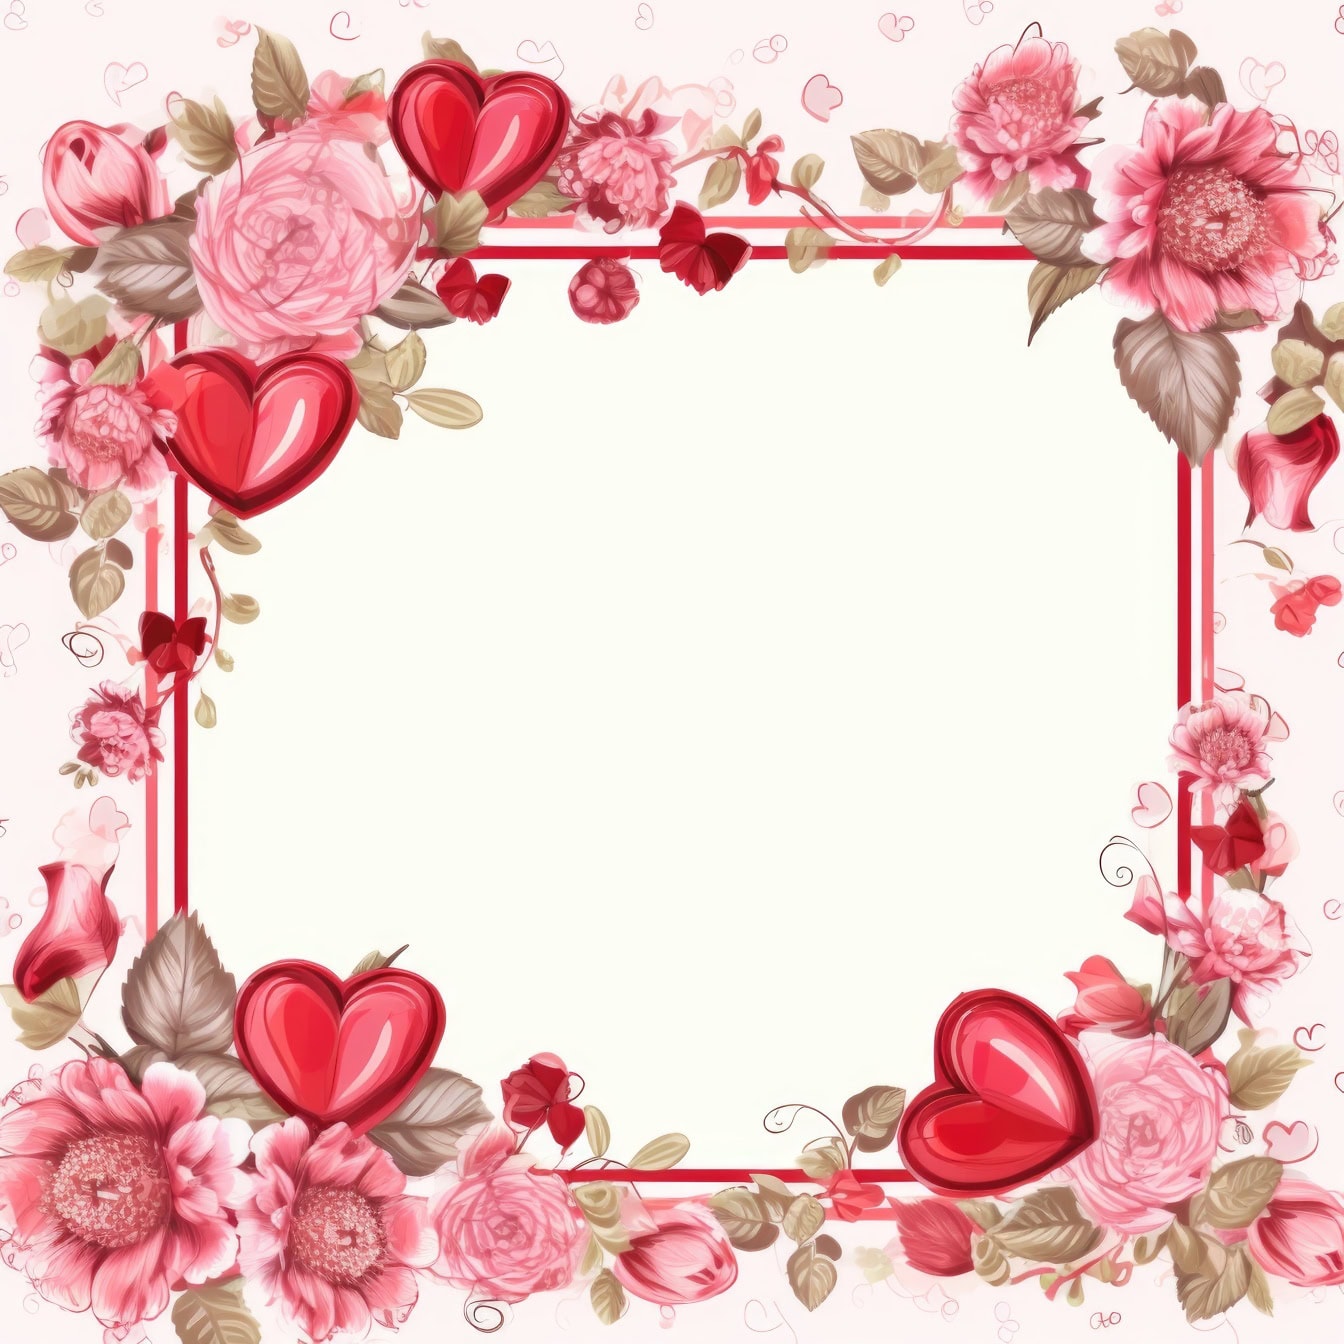 분홍색 꽃과 하트가 있는 사각형 프레임의 로맨틱한 인사말 카드